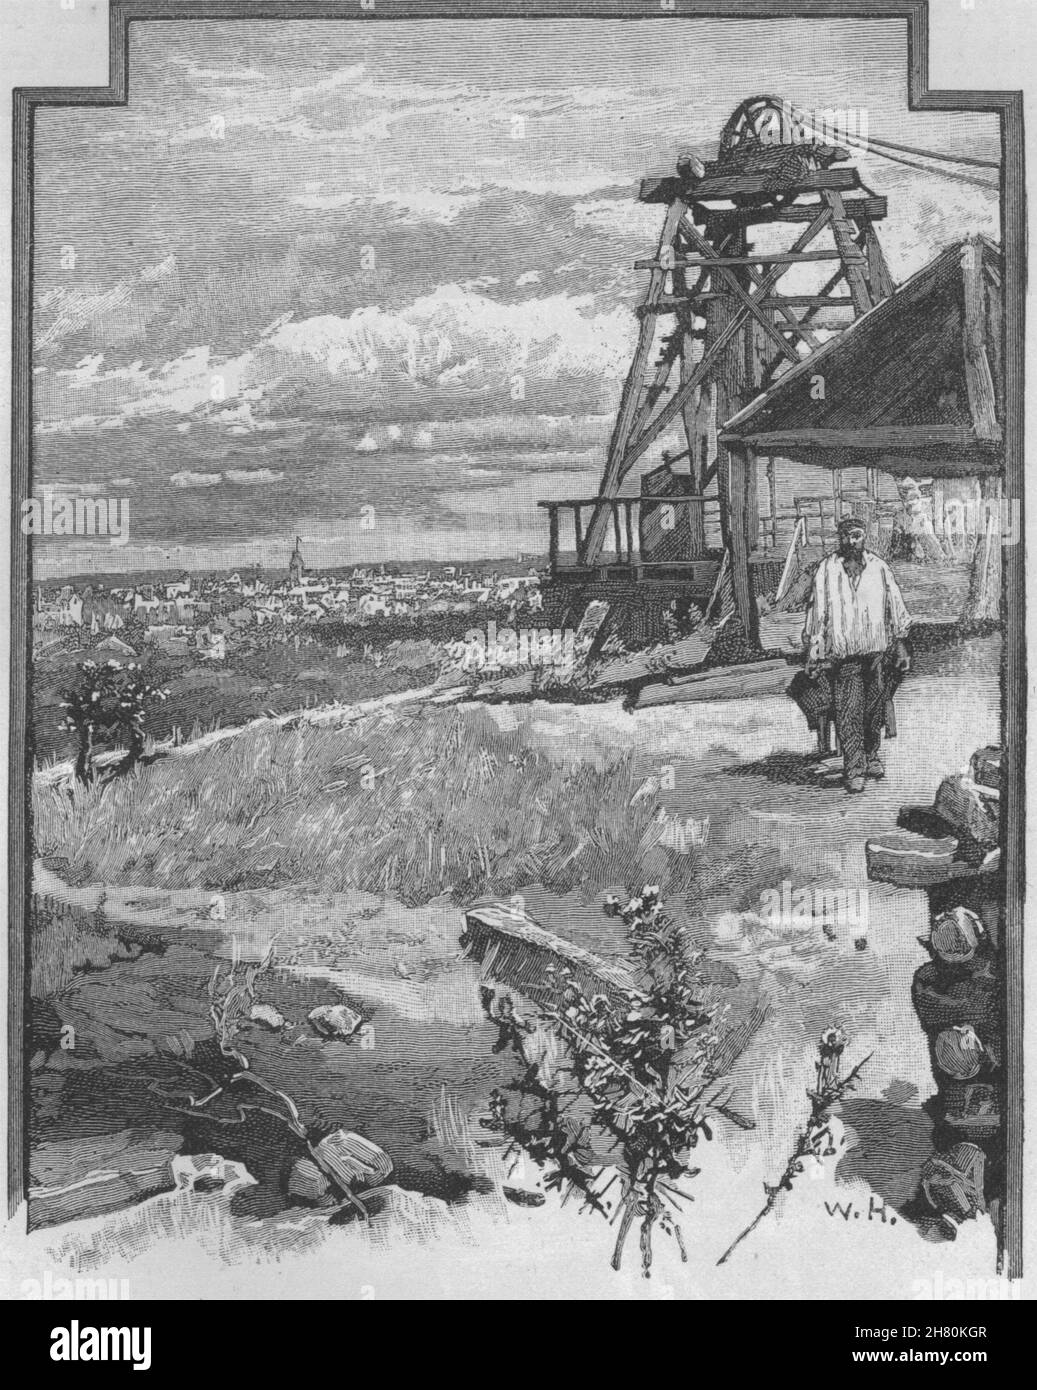 La ciudad de Cerro Negro. Ballarat. Australia 1890 antigua imagen de impresión Foto de stock